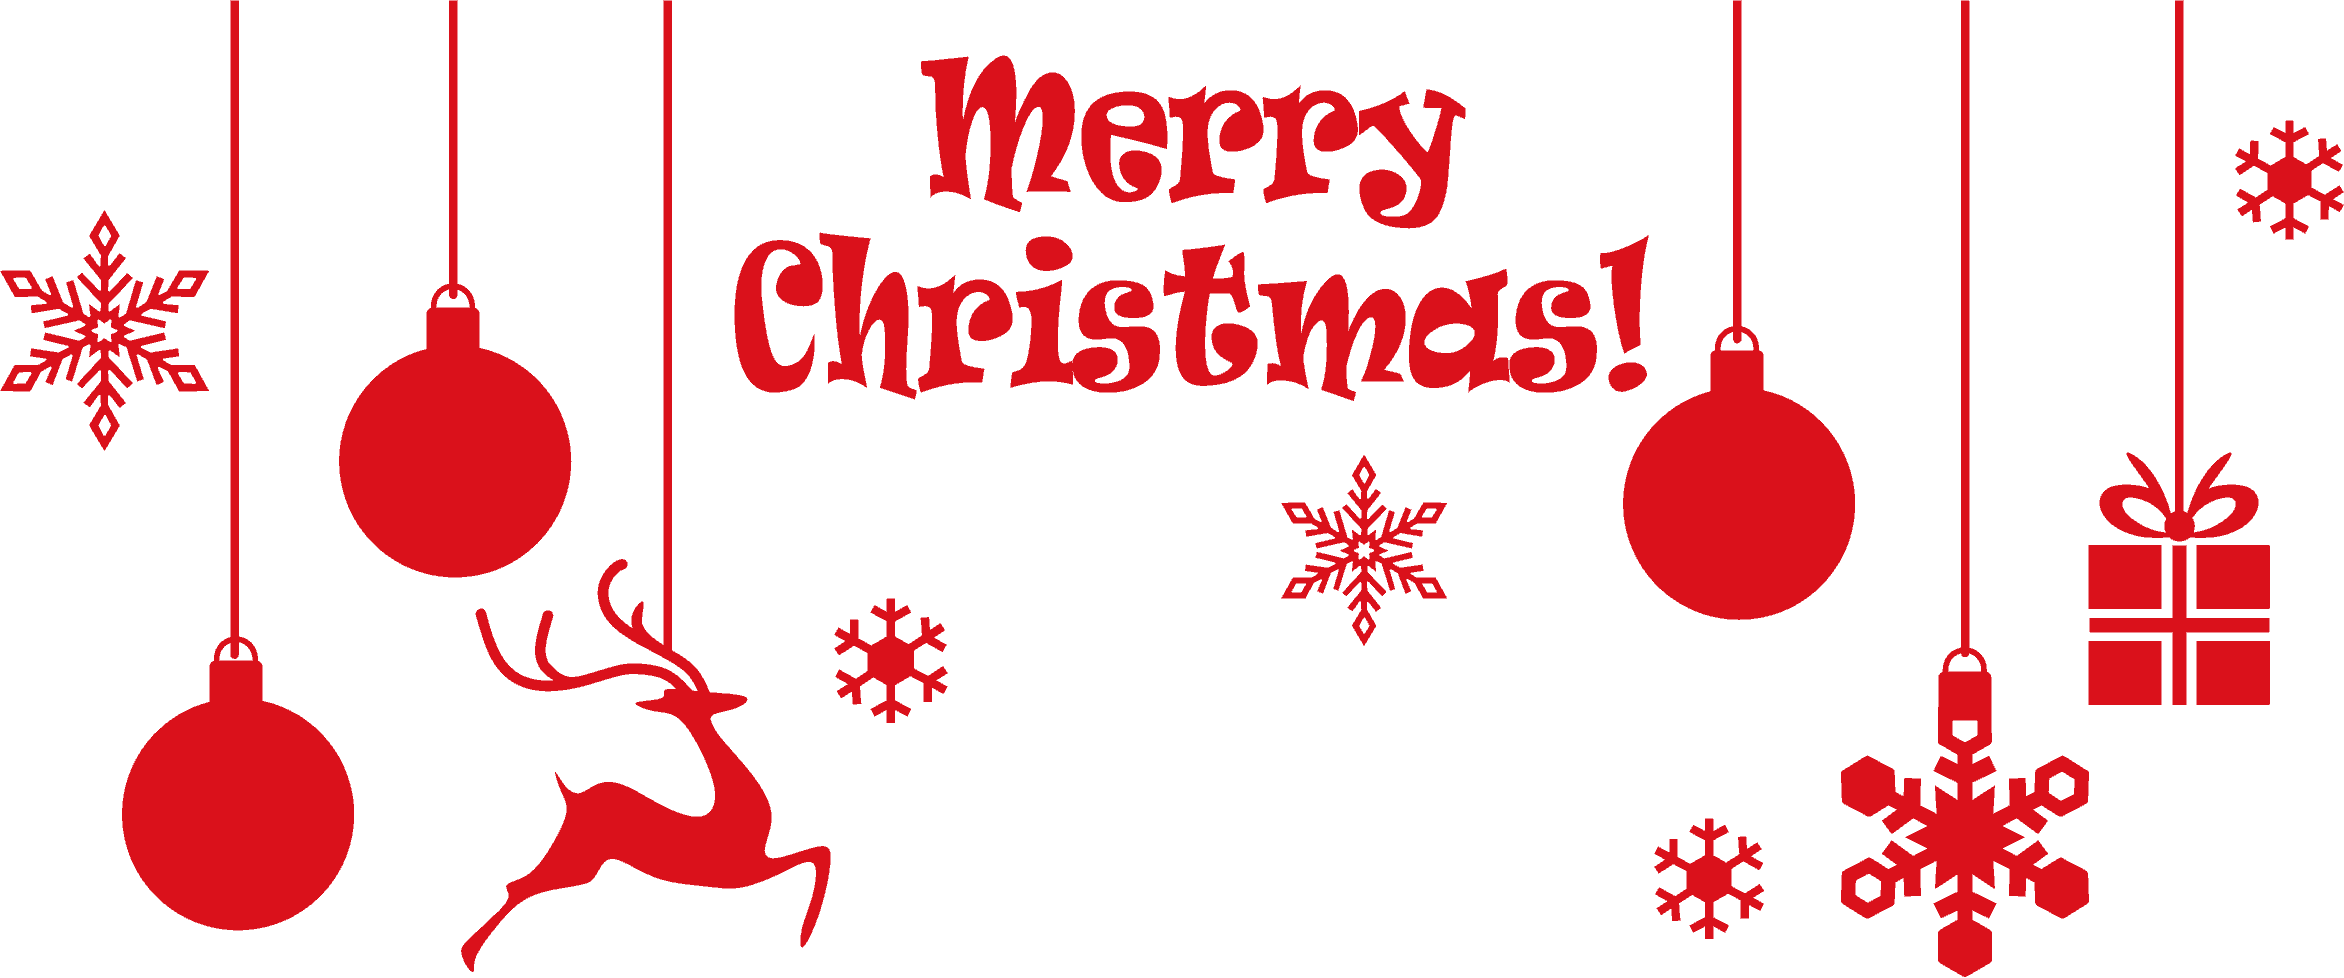 Frohe weihnachten text transparent Image